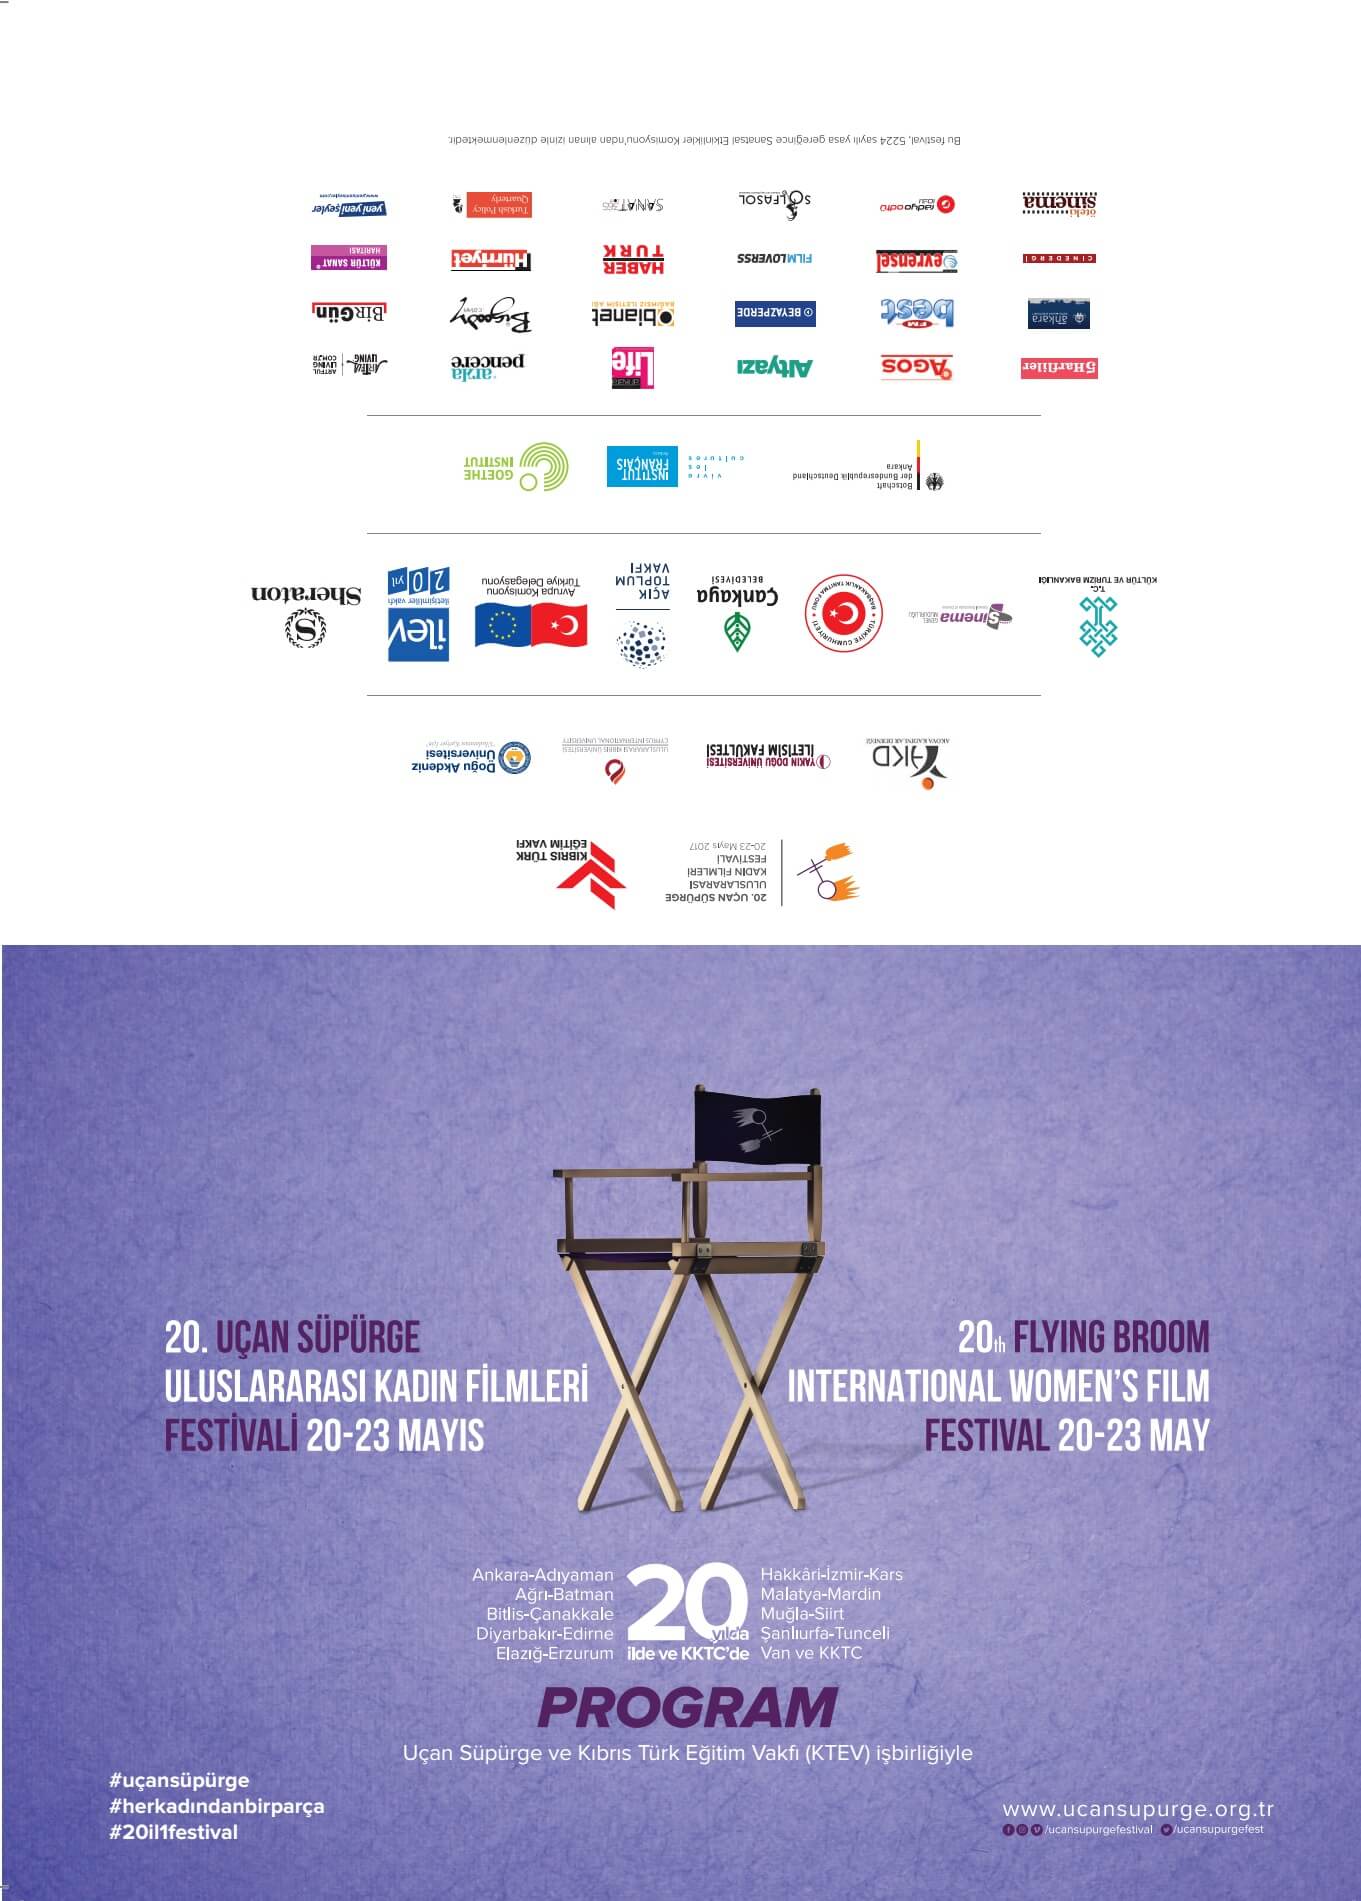 20. Uçan Süpürge “Uluslararası Kadın Filmleri Festivali”